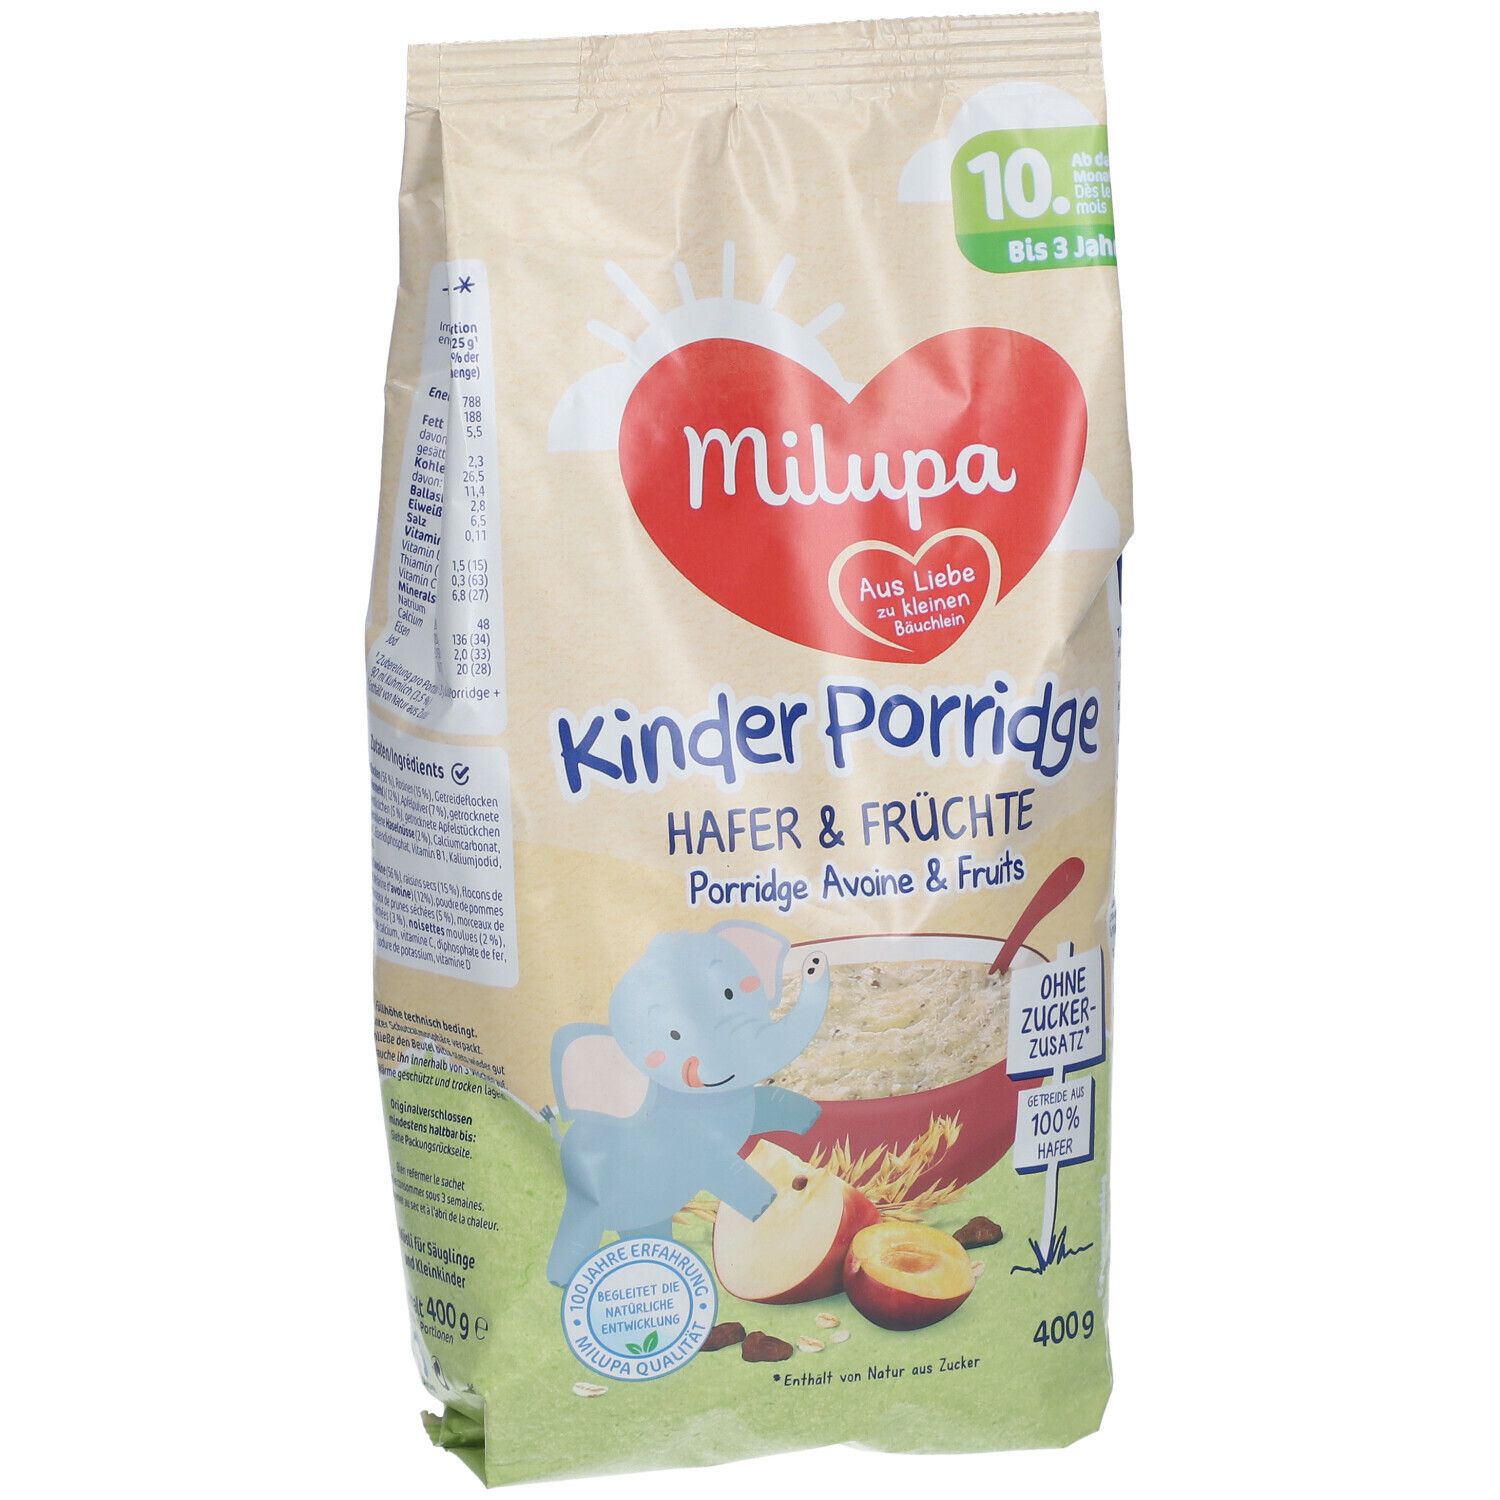 Milupa Kinder Porridge Hafer & Früchte ab dem 10 Monat bis 3 Jahre